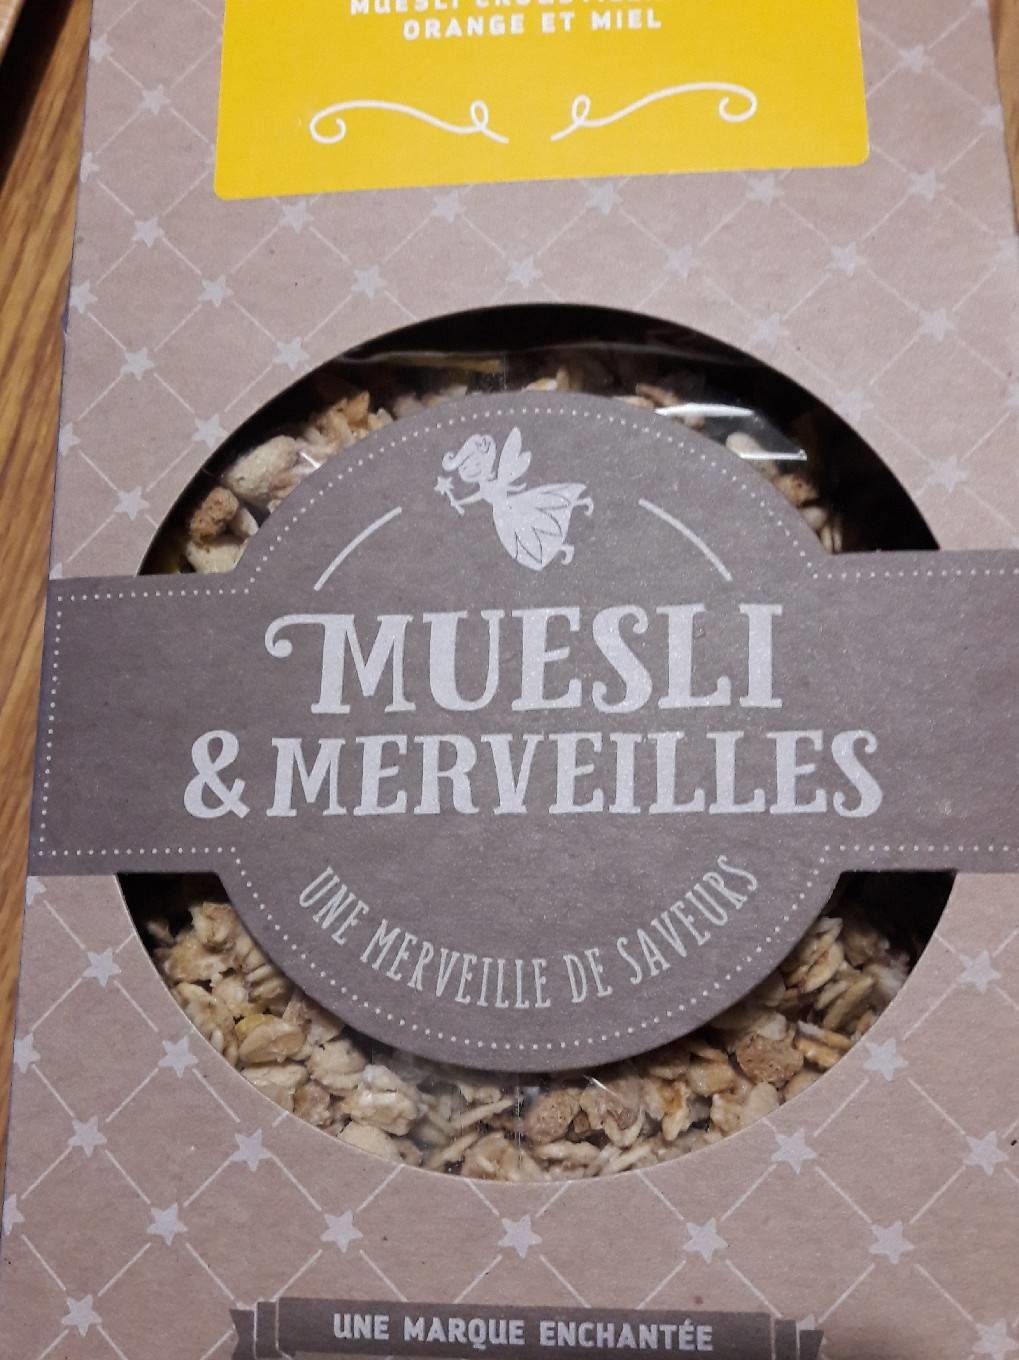 Muesli &merveilles - Product - fr